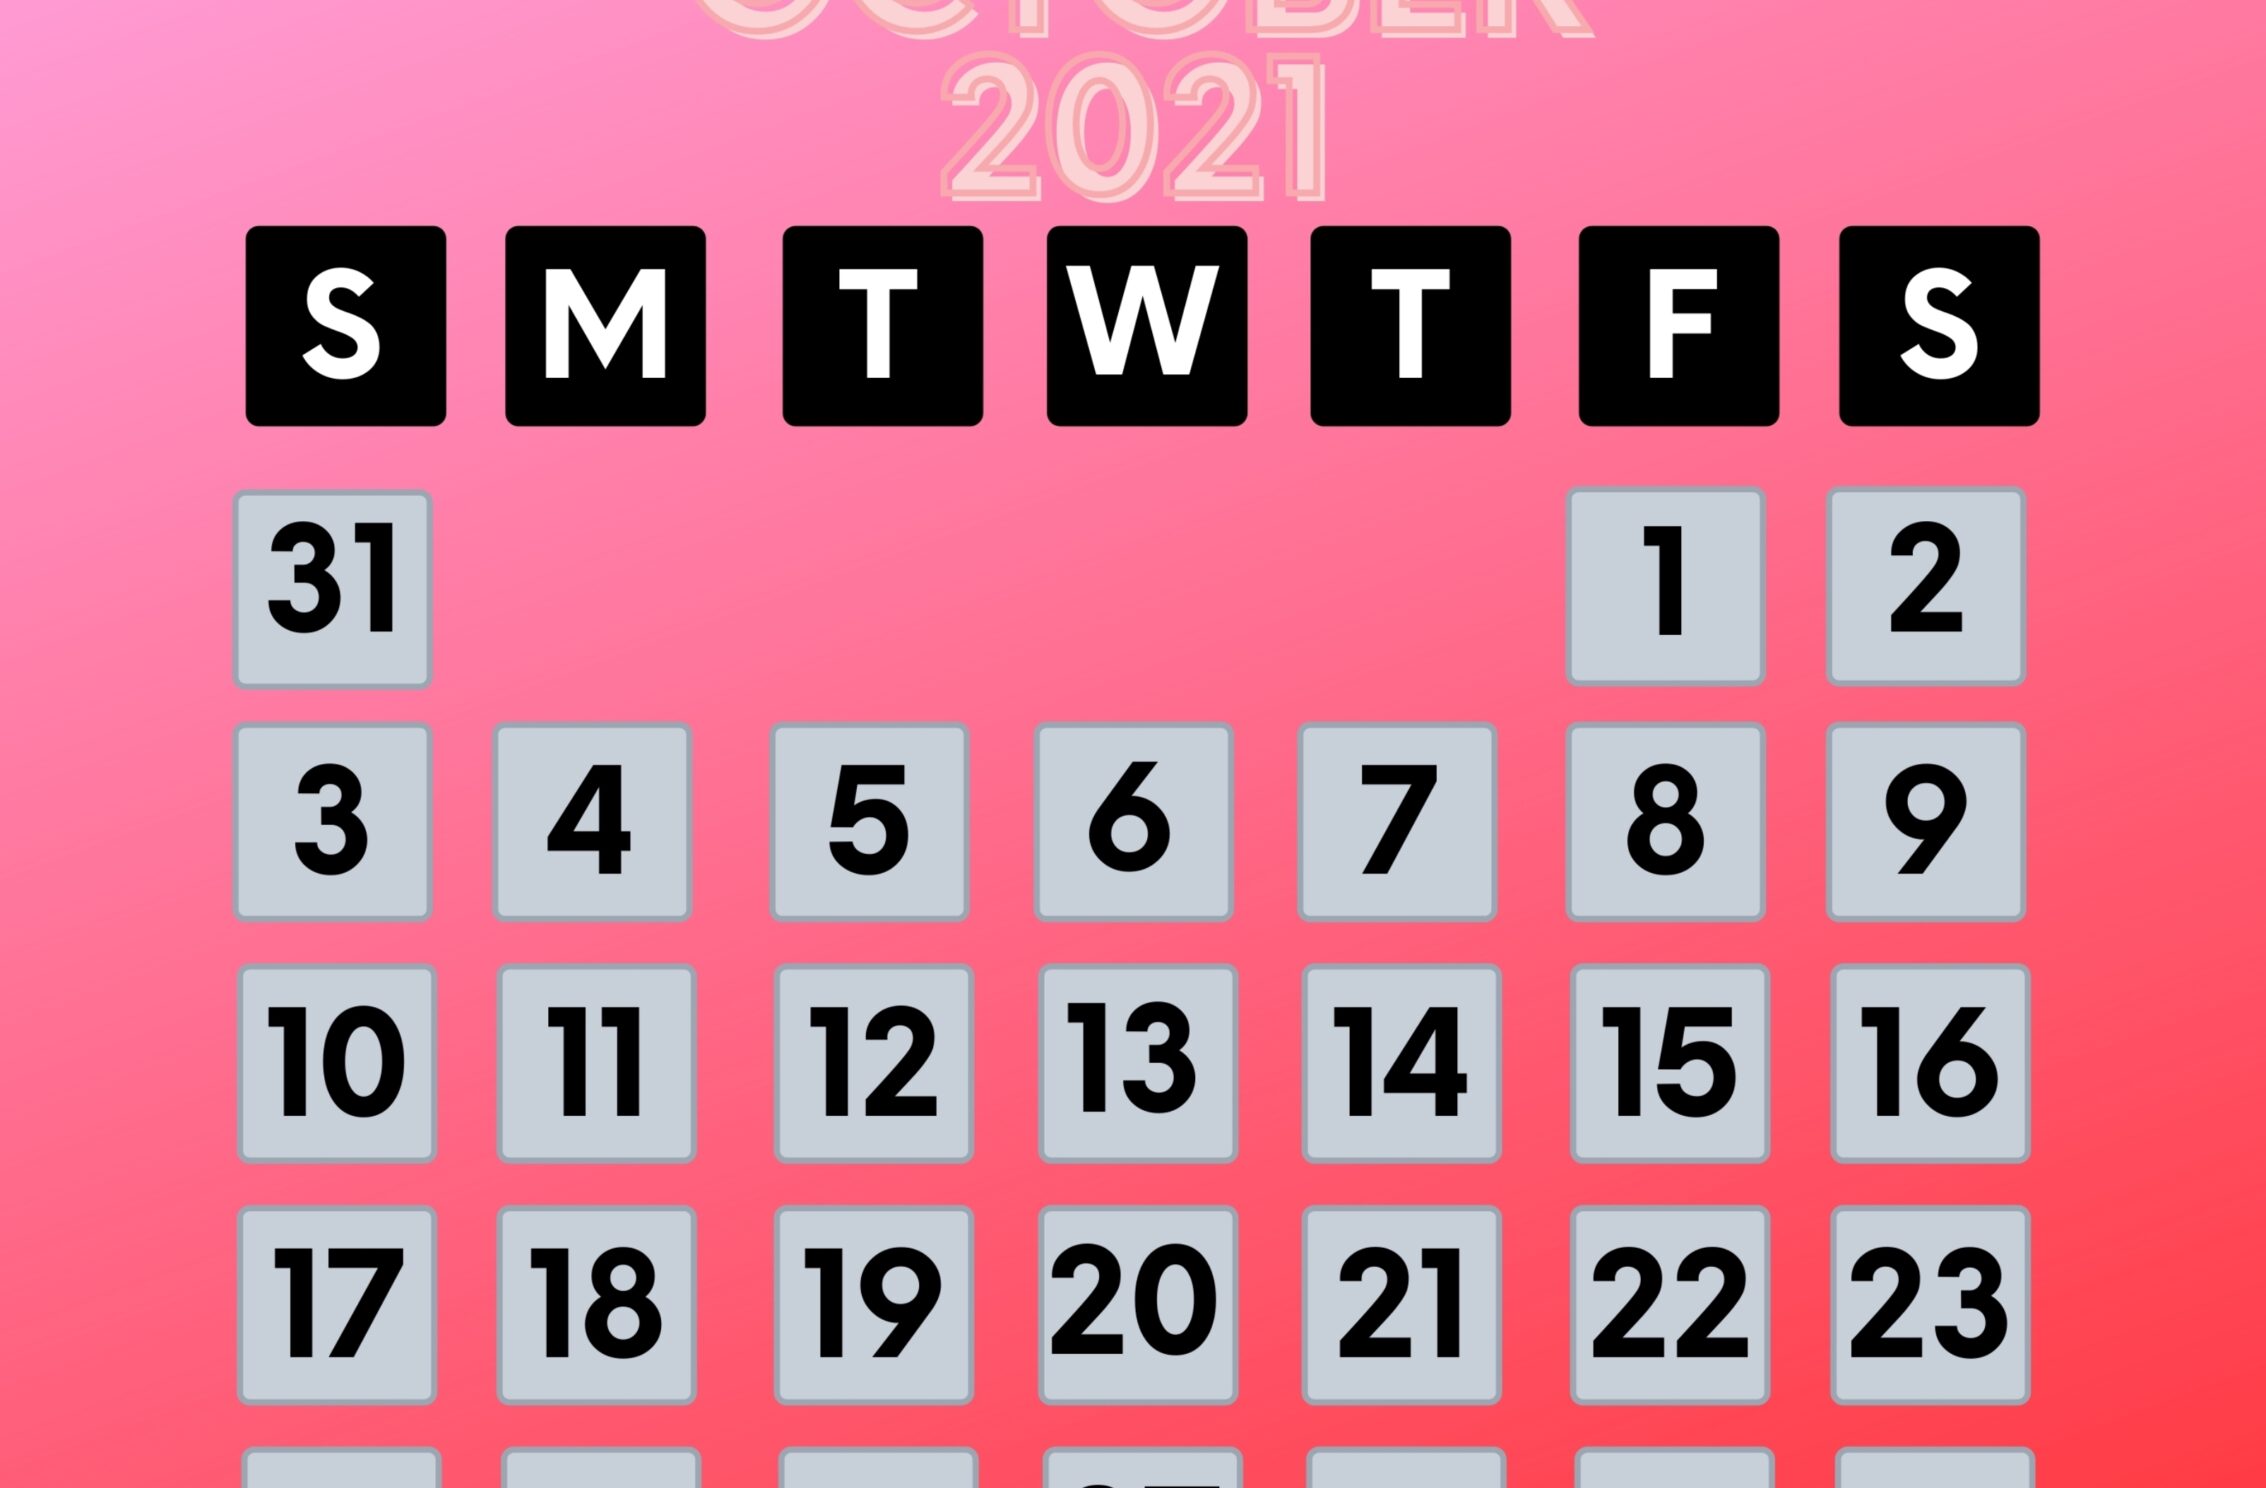 2266x1488 wallpaper October 2021 Calendar iPad Wallpaper 2266x1488 pixels resolution